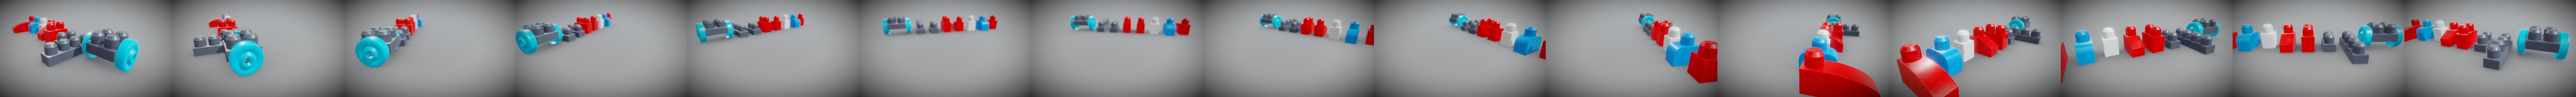 Lego Megablock, 3D CAD Model Library